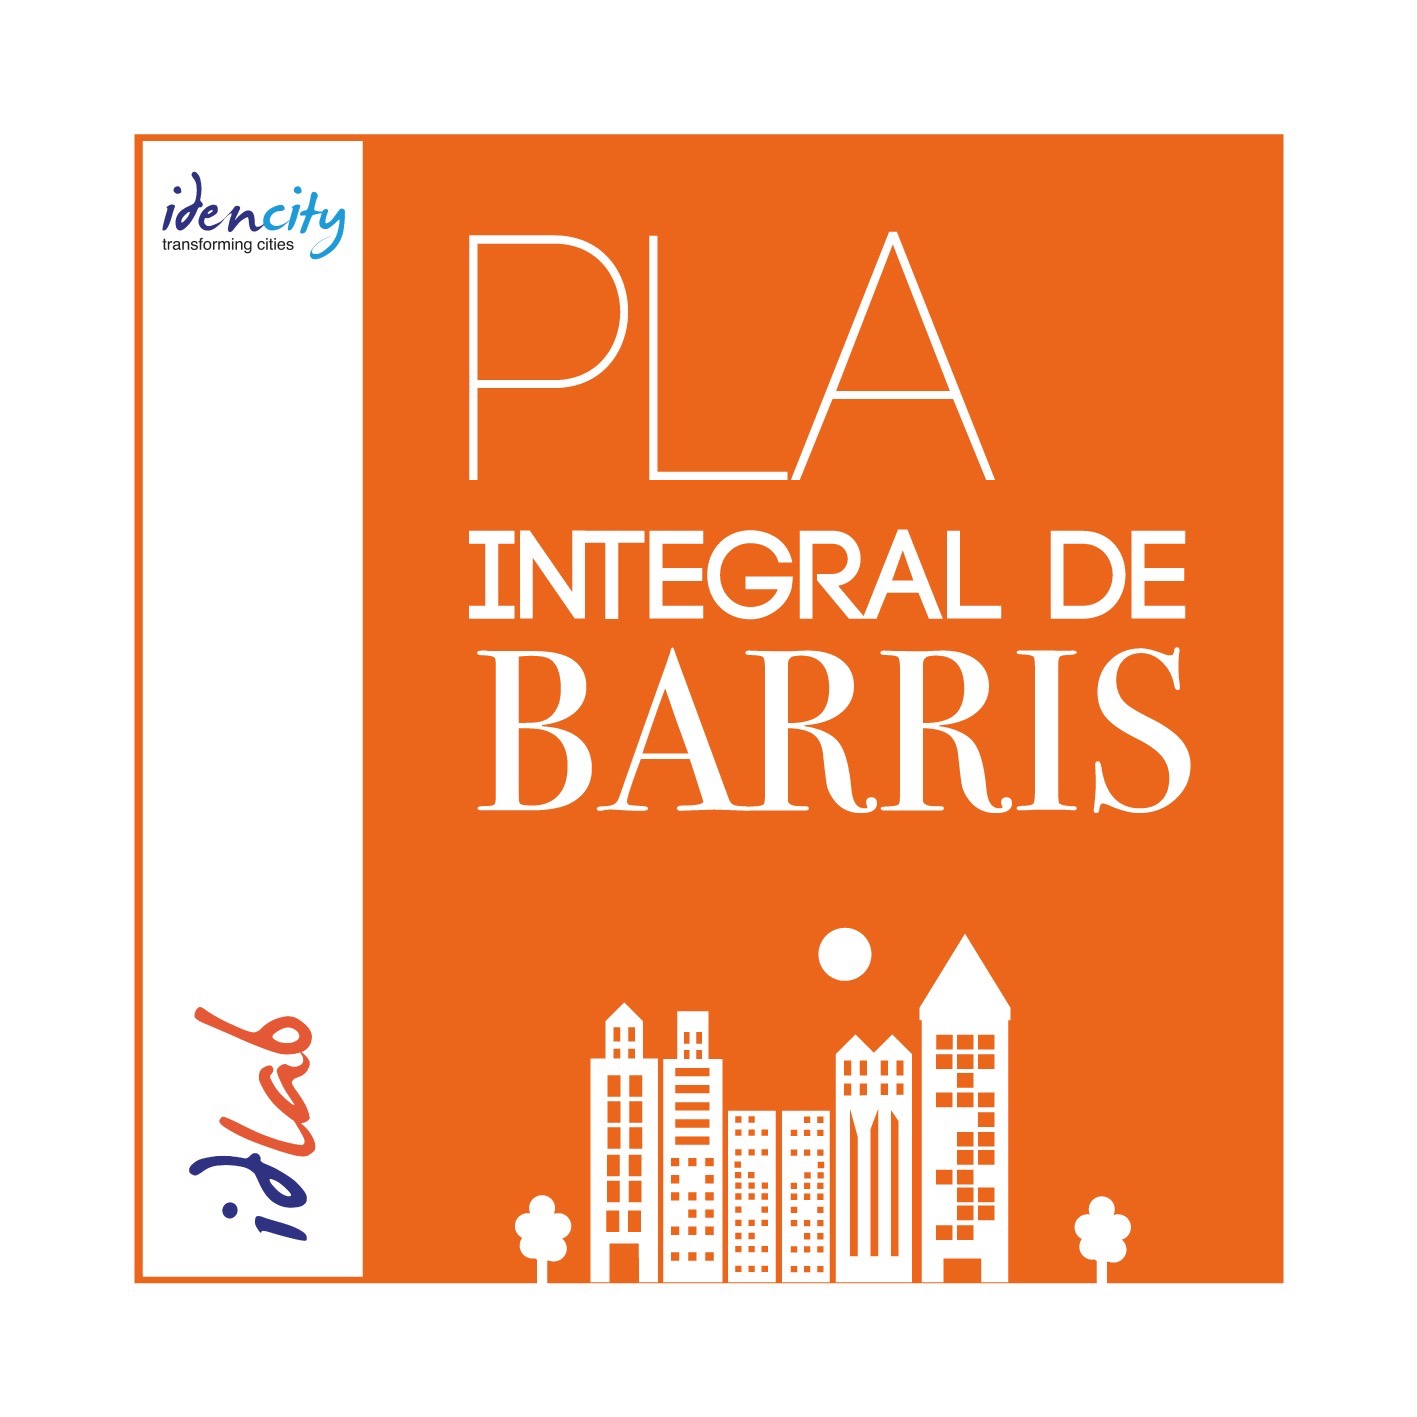 PLA INTEGRAL DE BARRIS